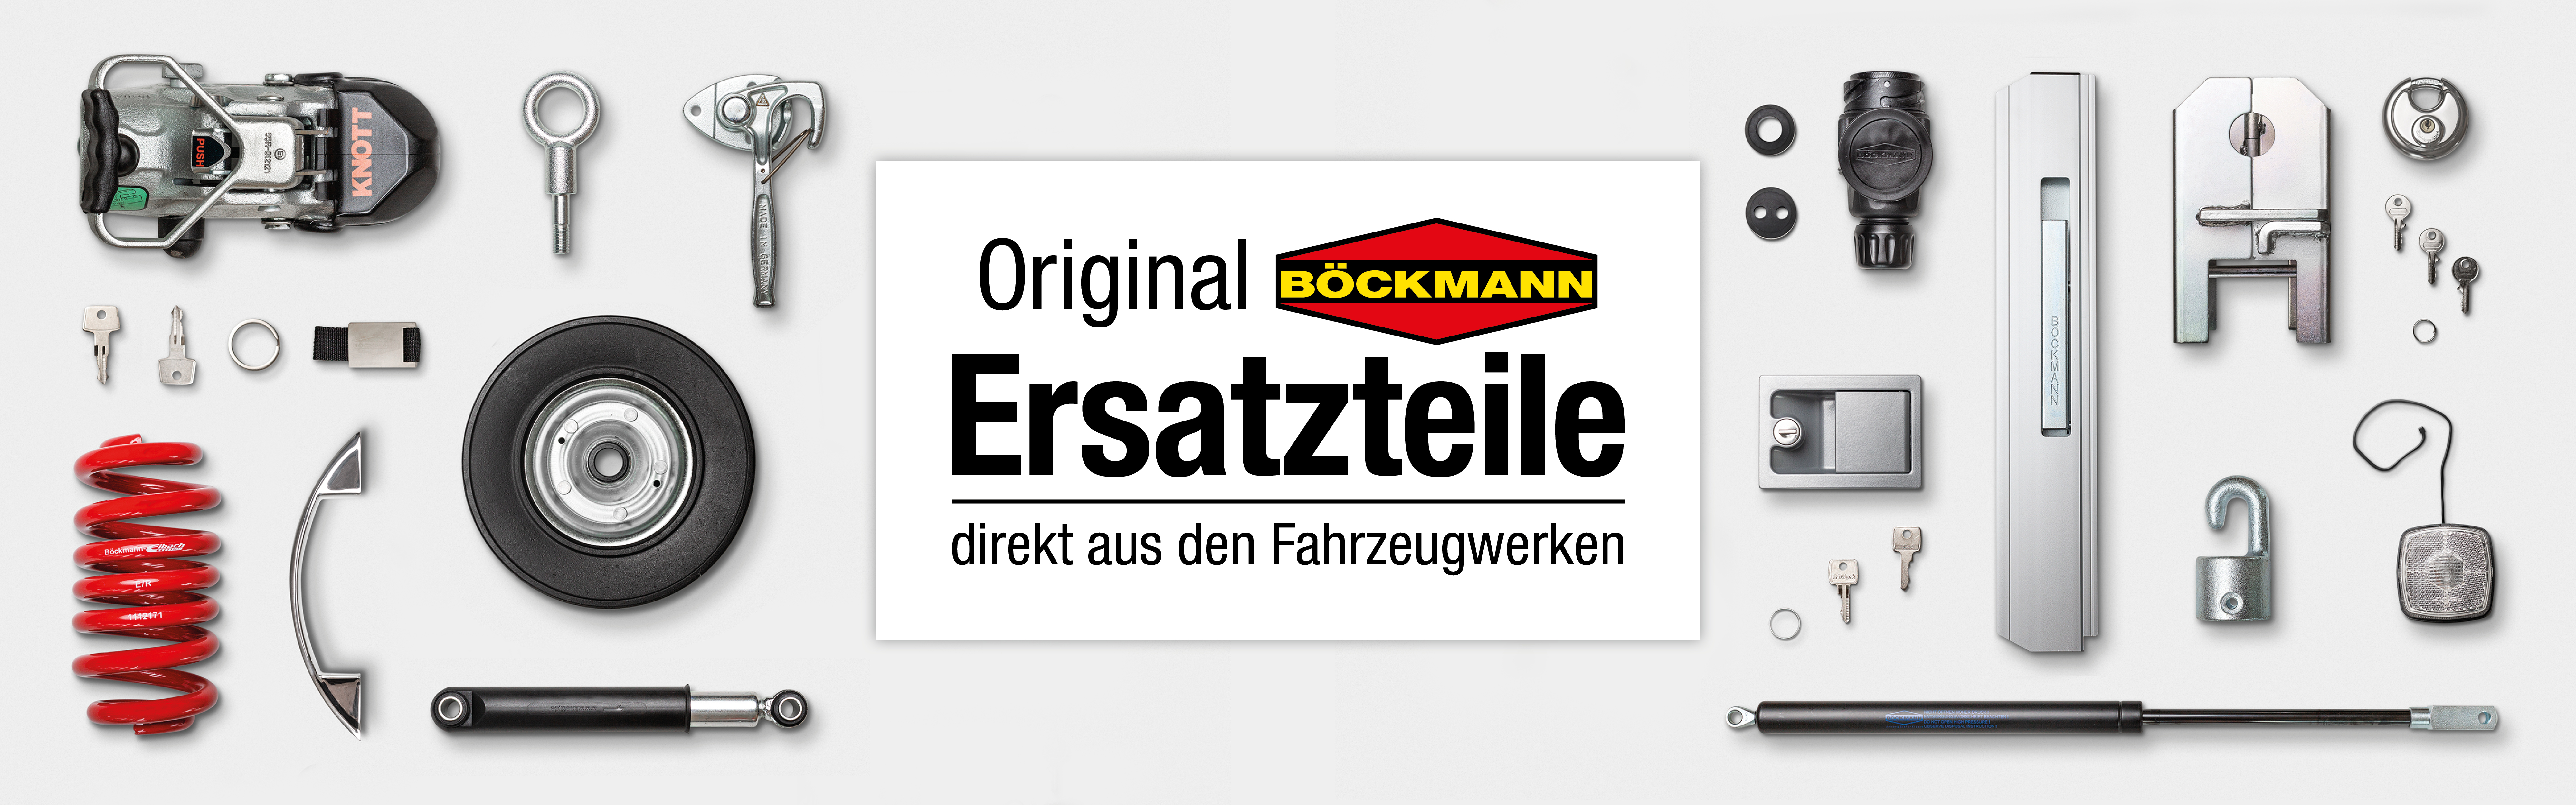 Böckmann Shop | Ersatzteile & Zubehöre Titelbild  | © Böckmann